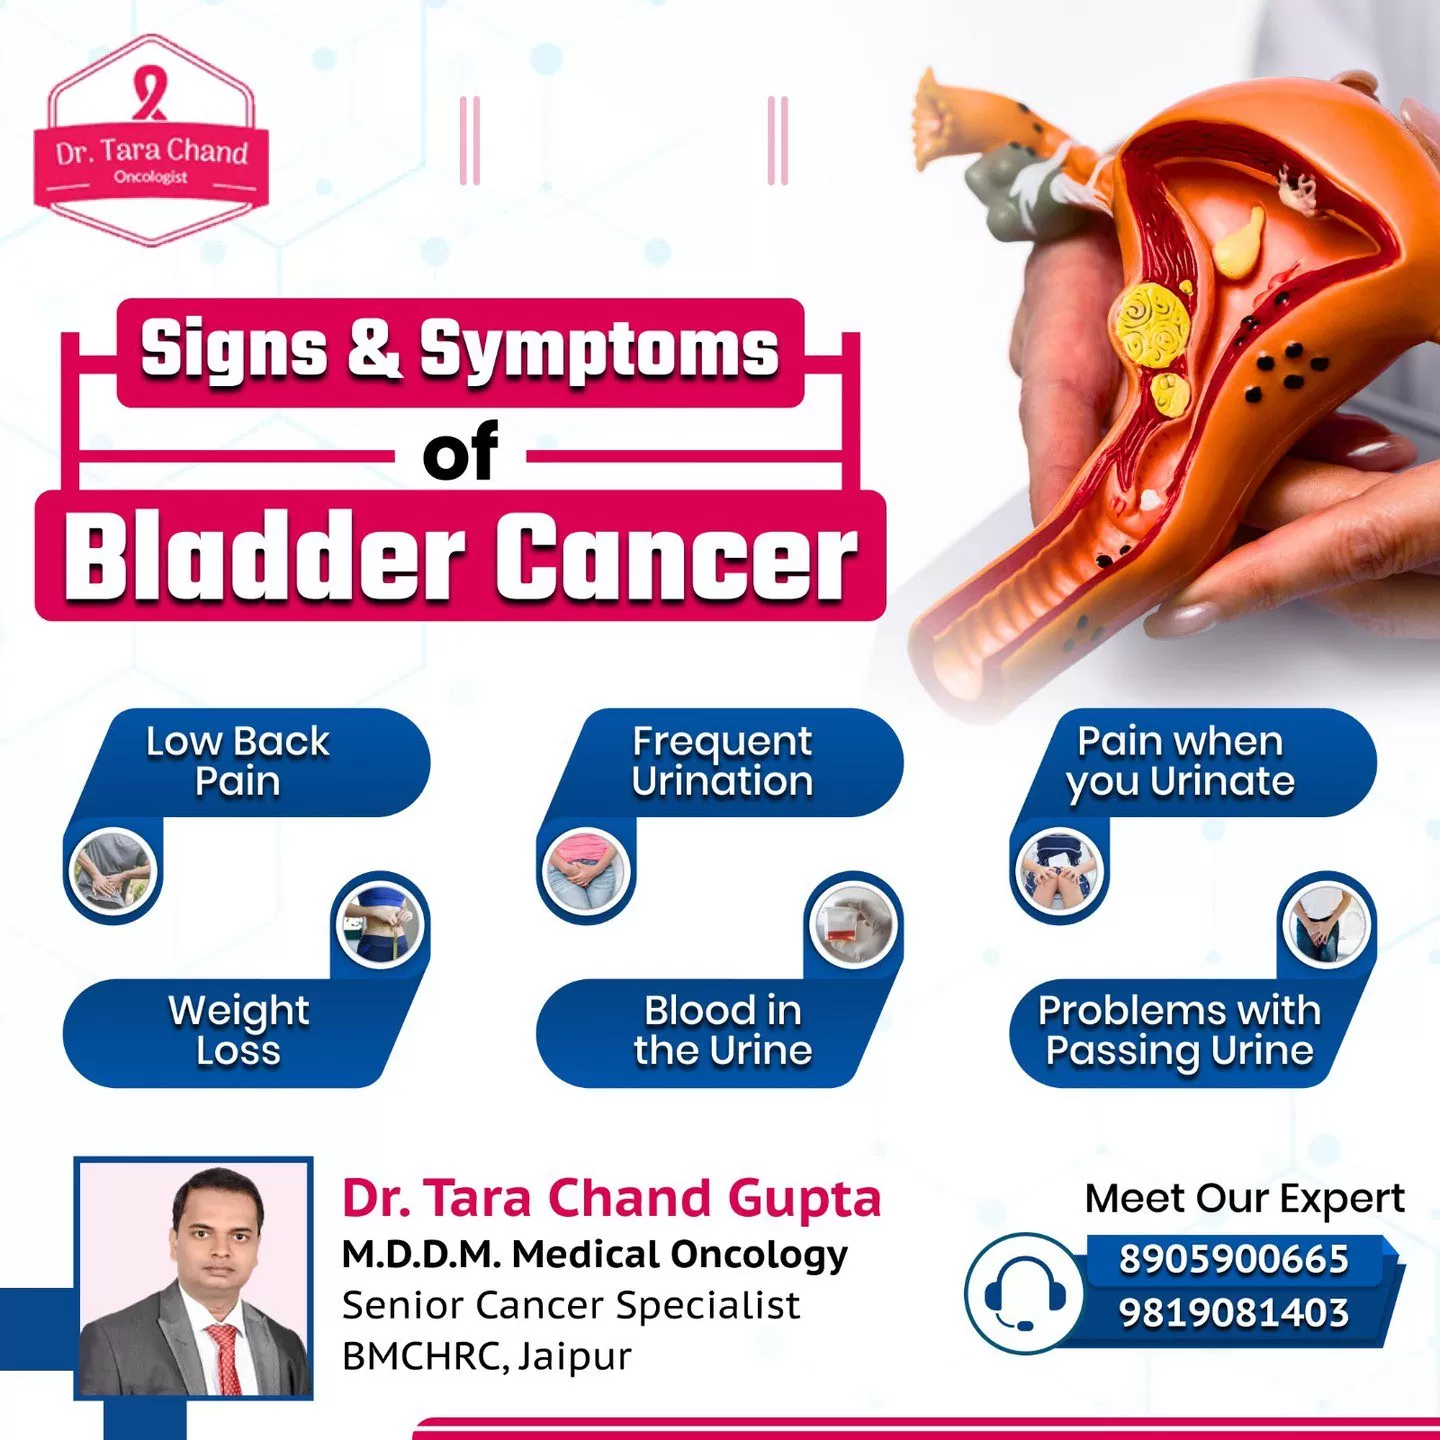 Signs & Symptoms of Bladder Cancer